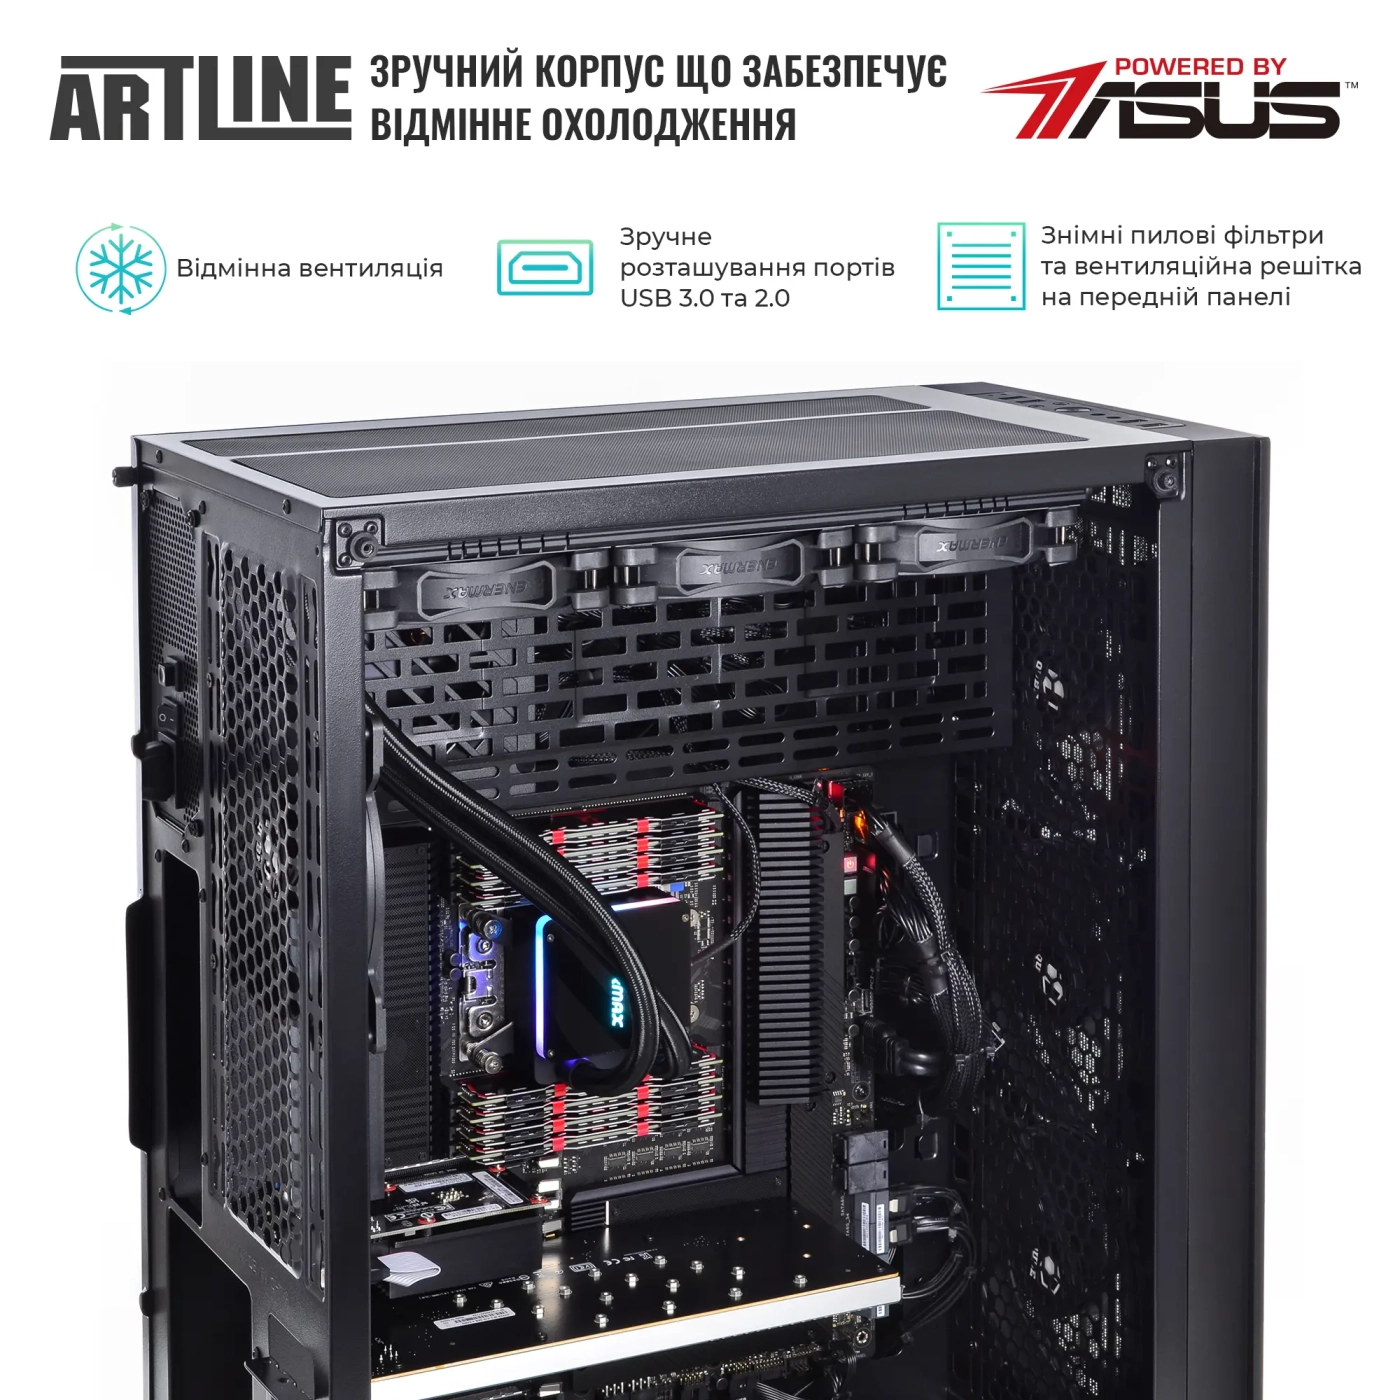 Купить Сервер ARTLINE Business T85v08 - фото 2